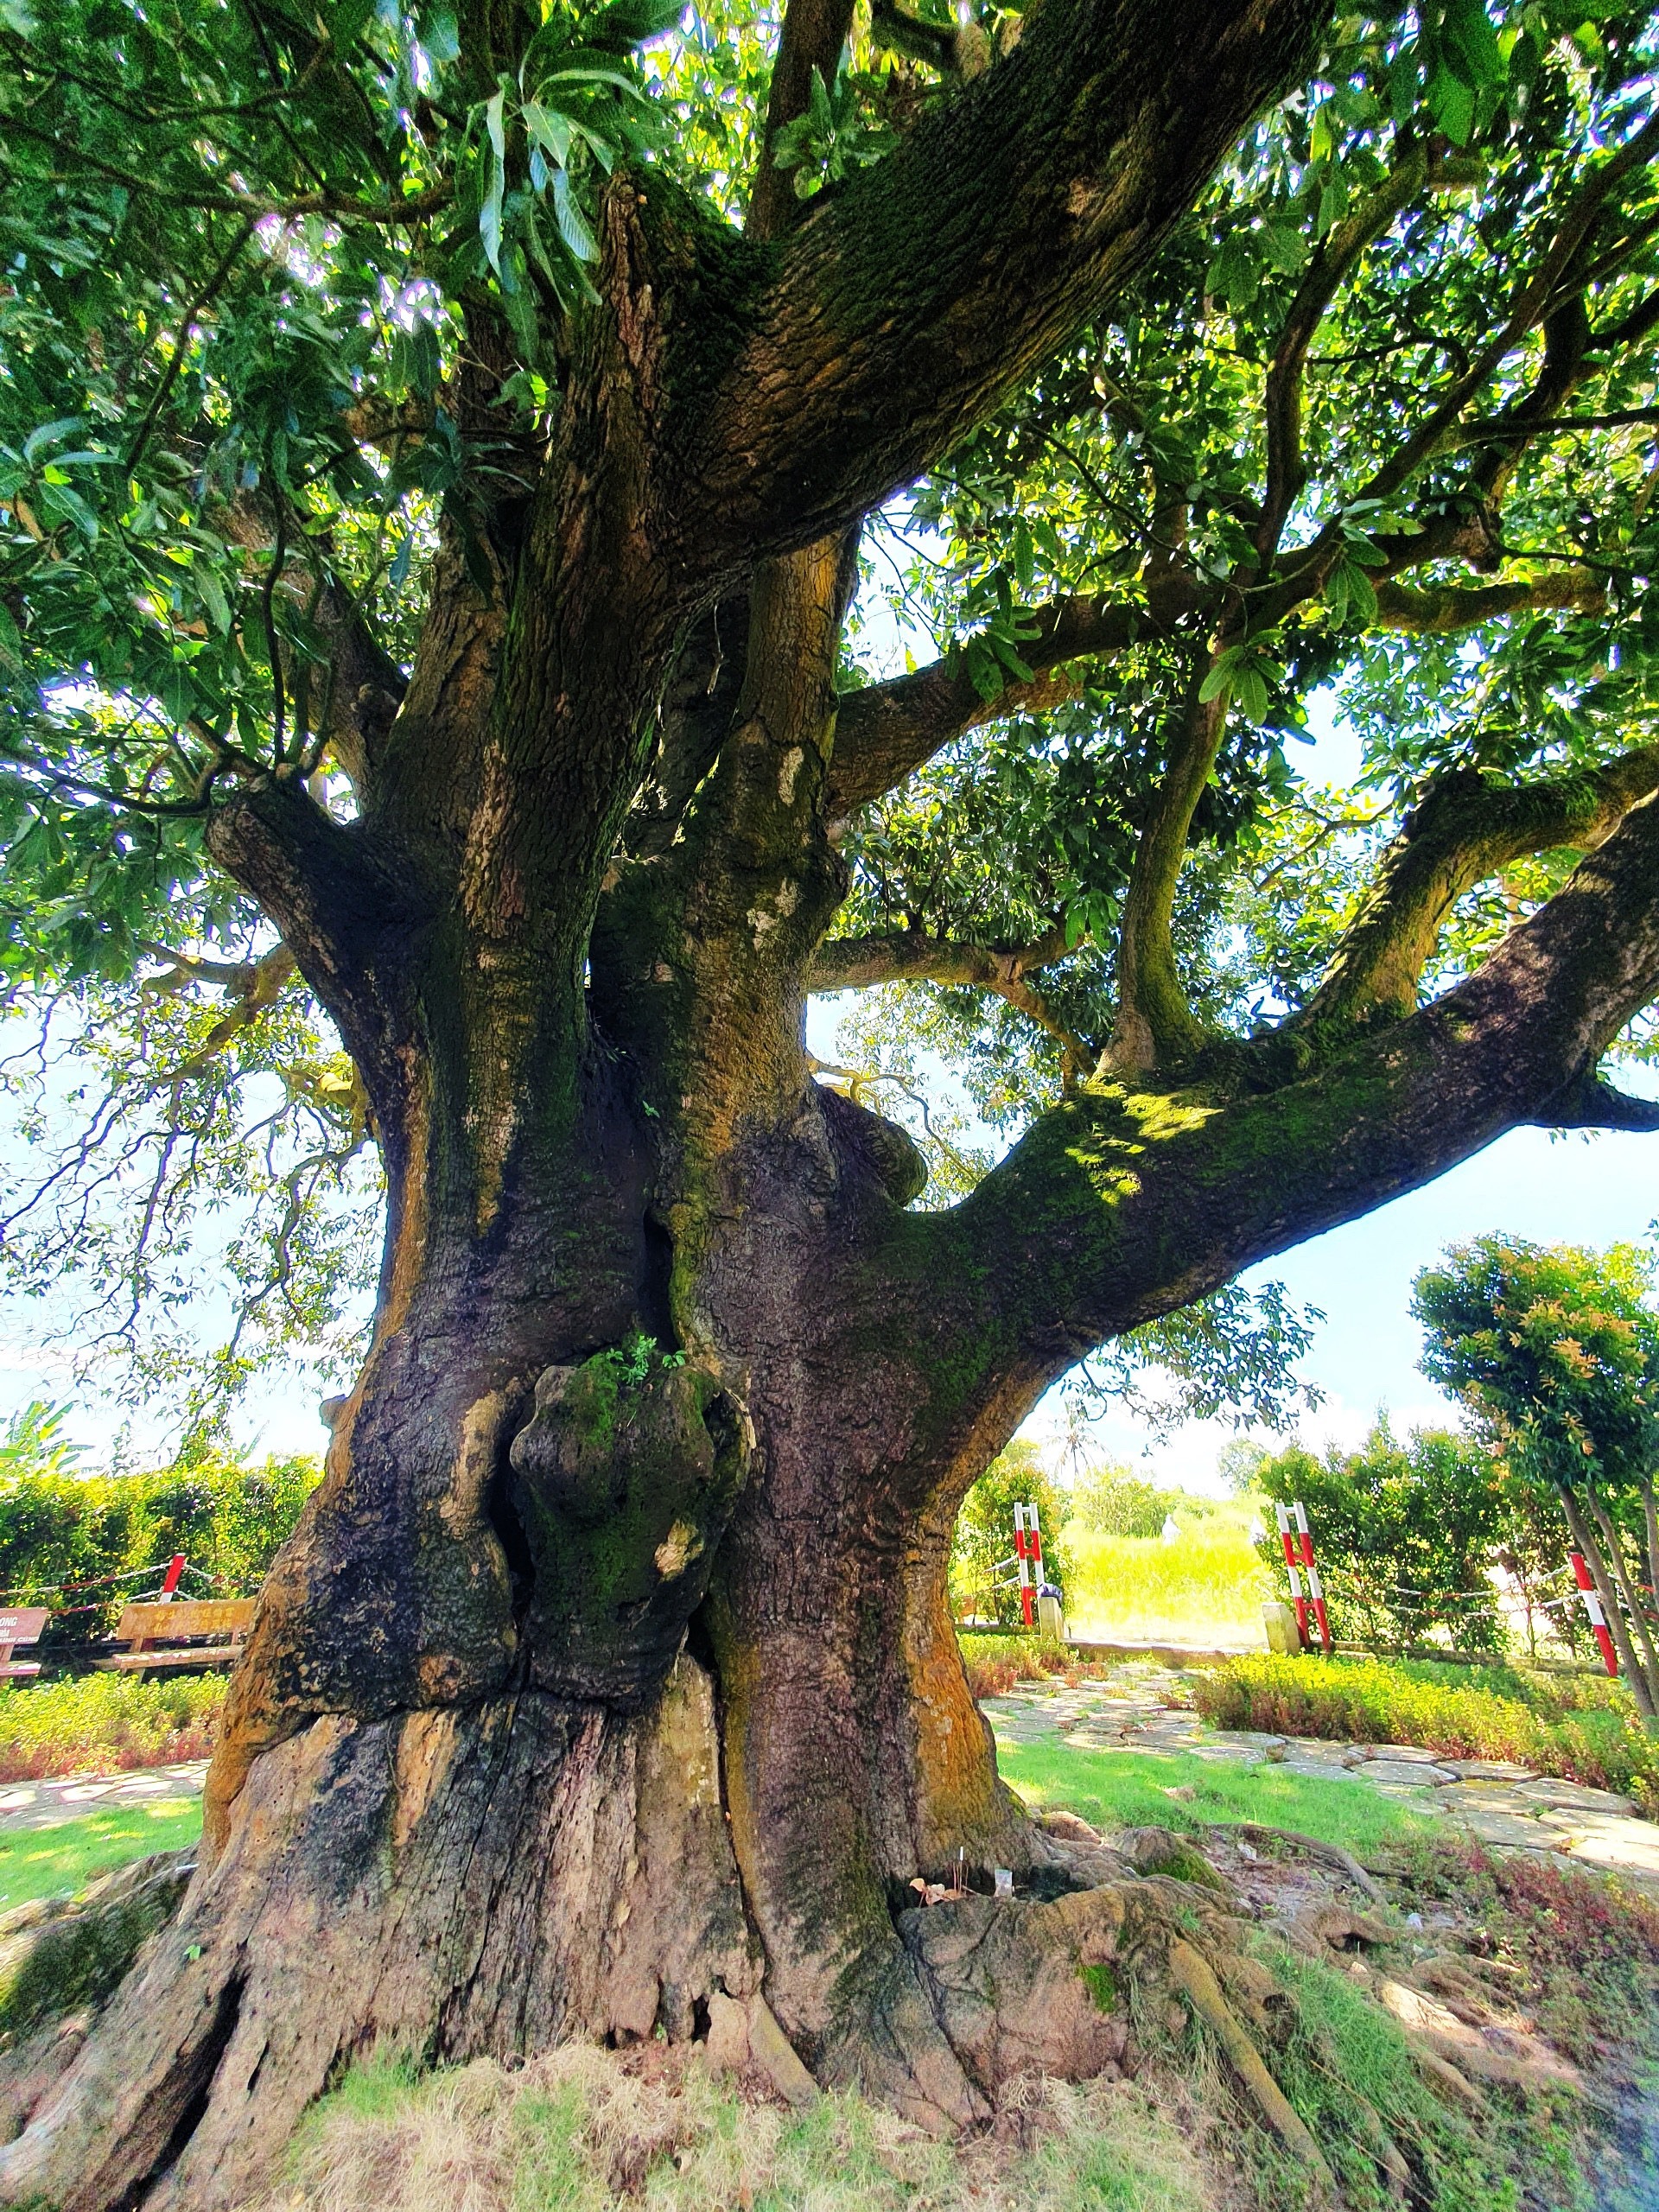 Tính theo mốc thời gian từ năm đó, đến nay cây xoài này đã có tuổi thọ khoảng 341 năm. Đây là cây xoài cổ thụ có tuổi thọ lớn nhất Bạc Liêu, cũng là cây xoài lớn nhất vùng ĐBSCL.